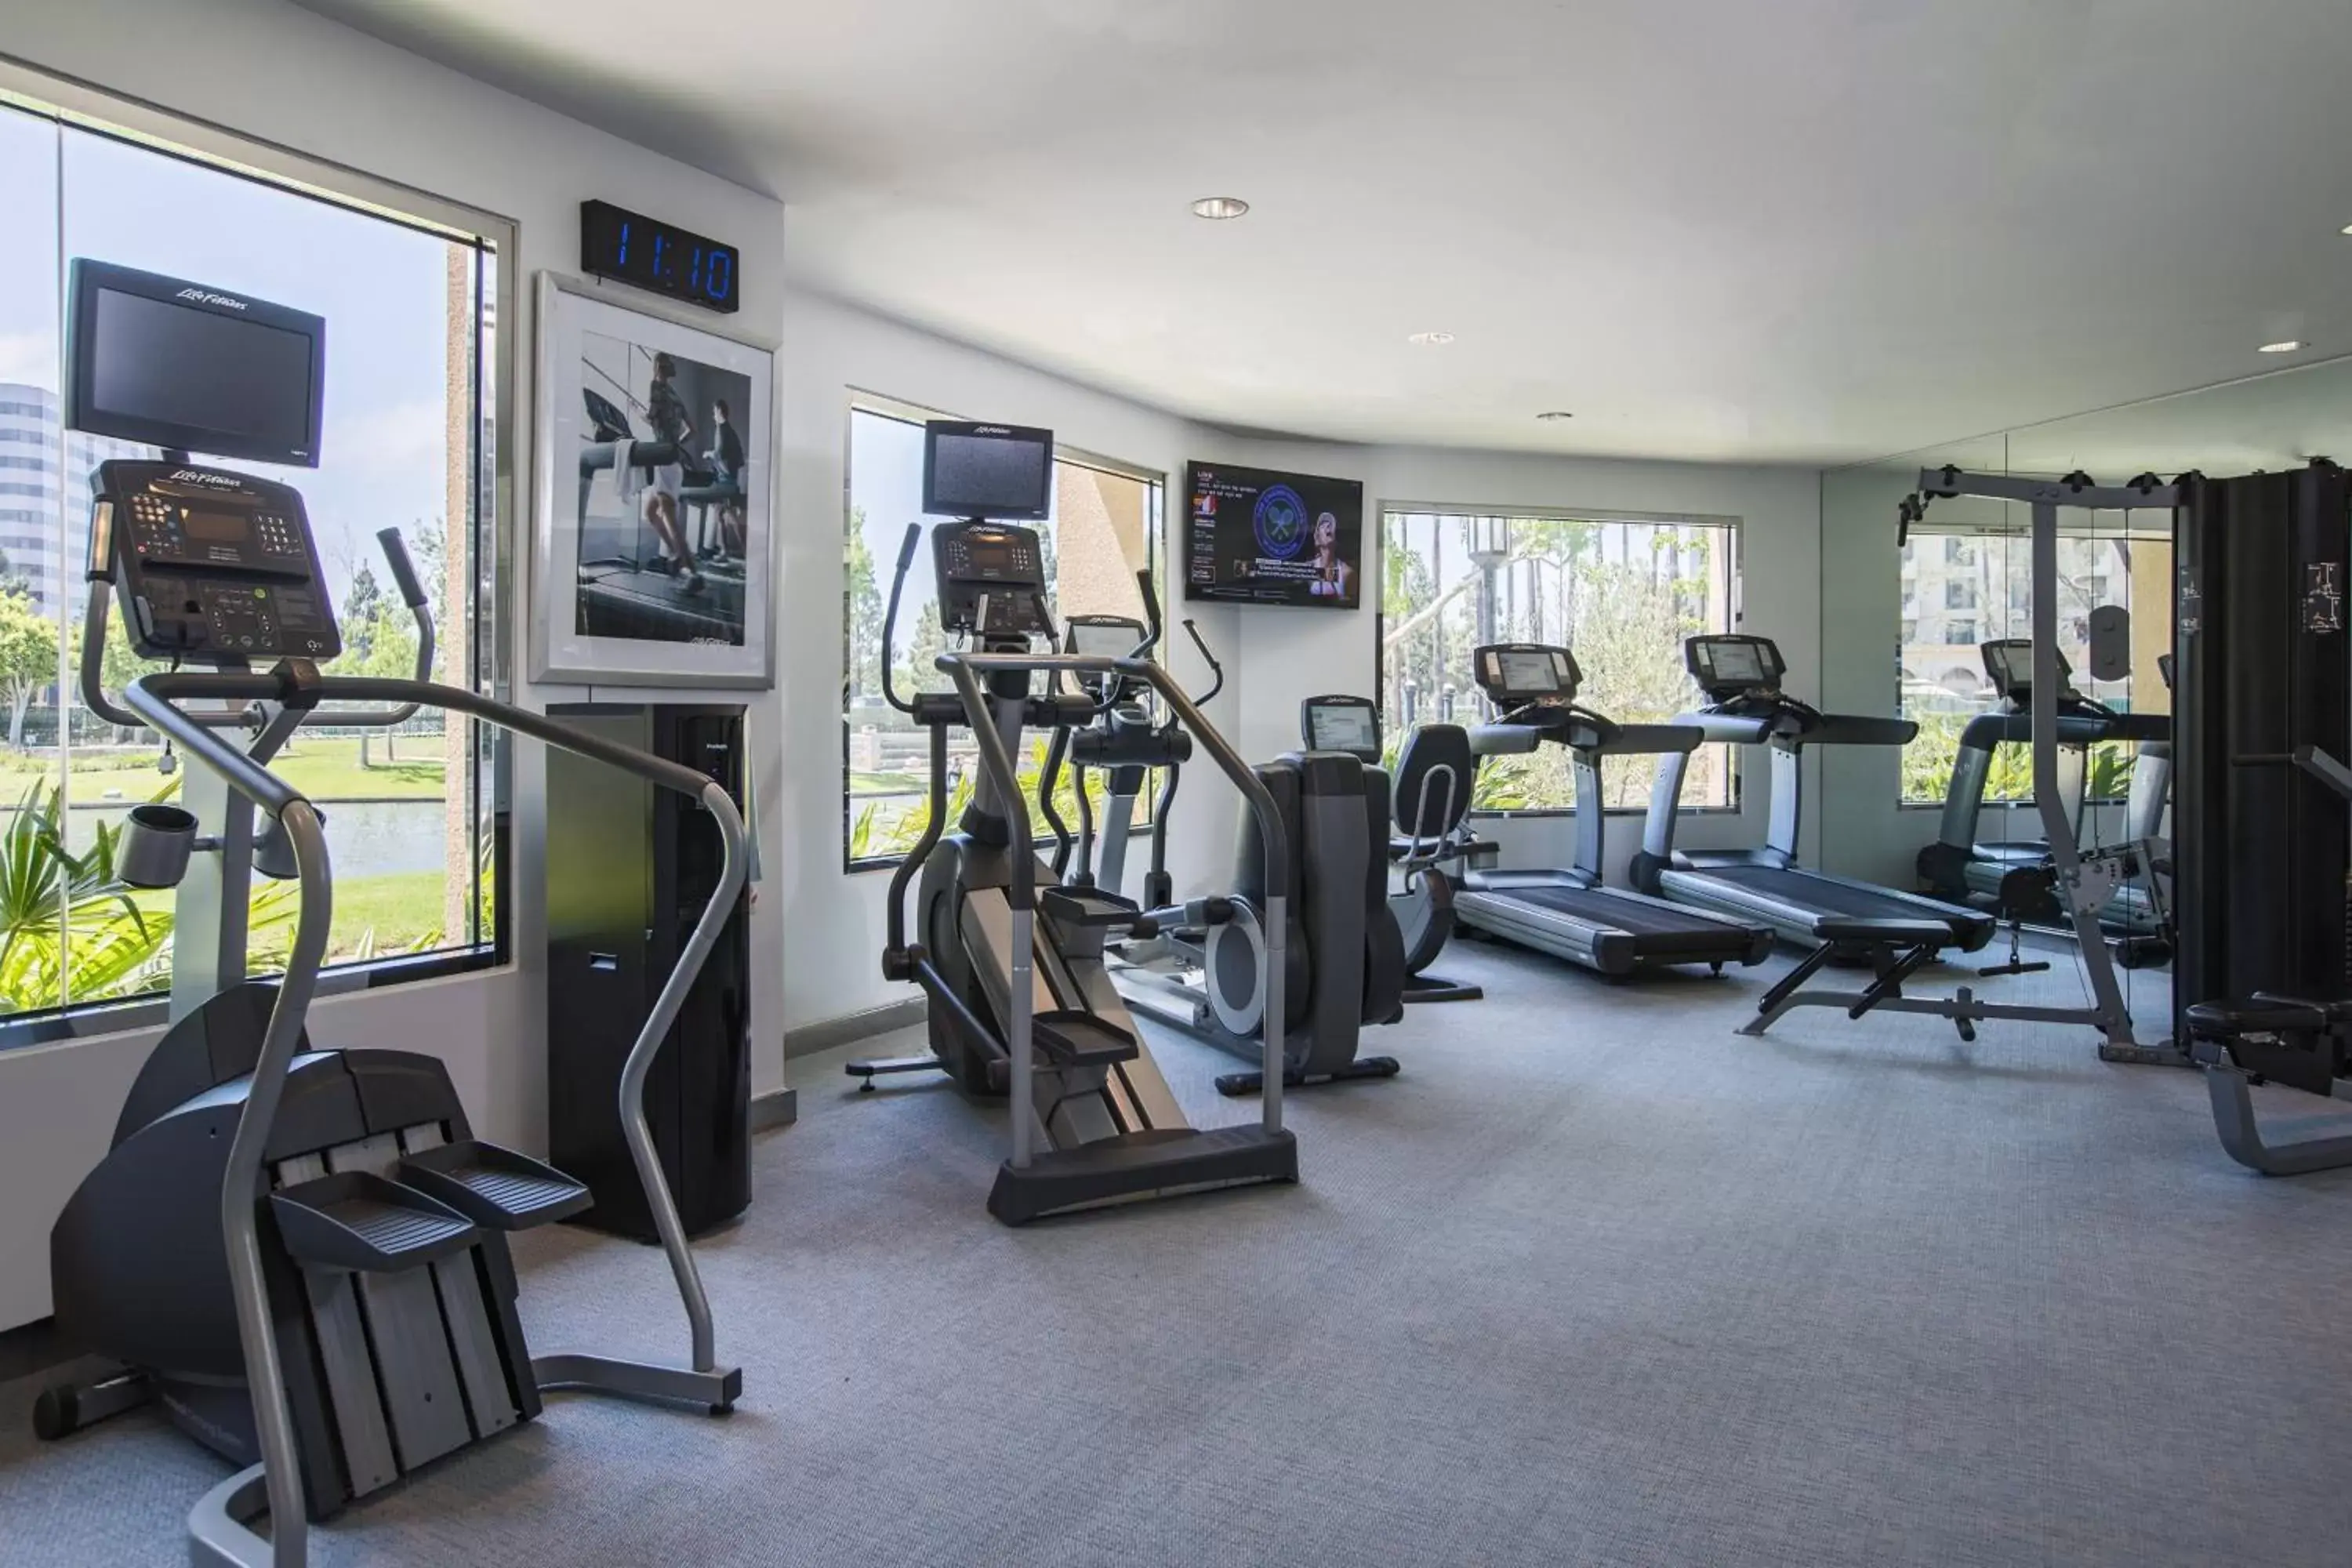 Fitness centre/facilities, Fitness Center/Facilities in Avenue of the Arts Costa Mesa, a Tribute Portfolio Hotel